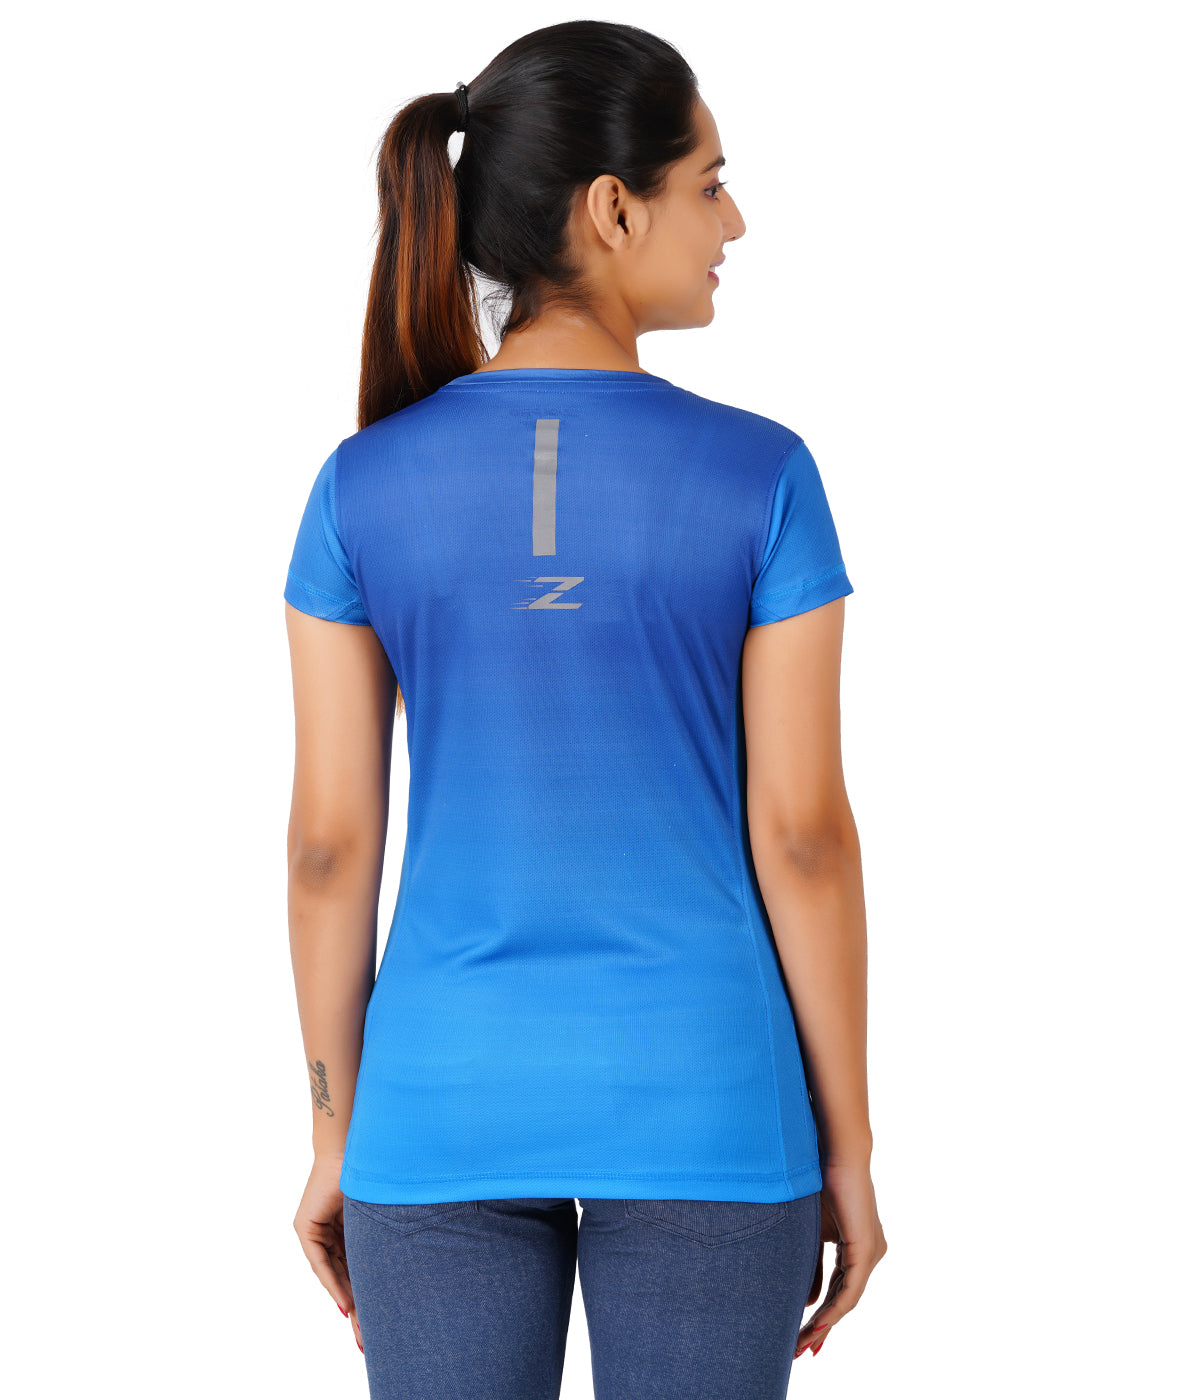 Zakpro Sports Women's Cycling T-Shirt (Bluish Run)